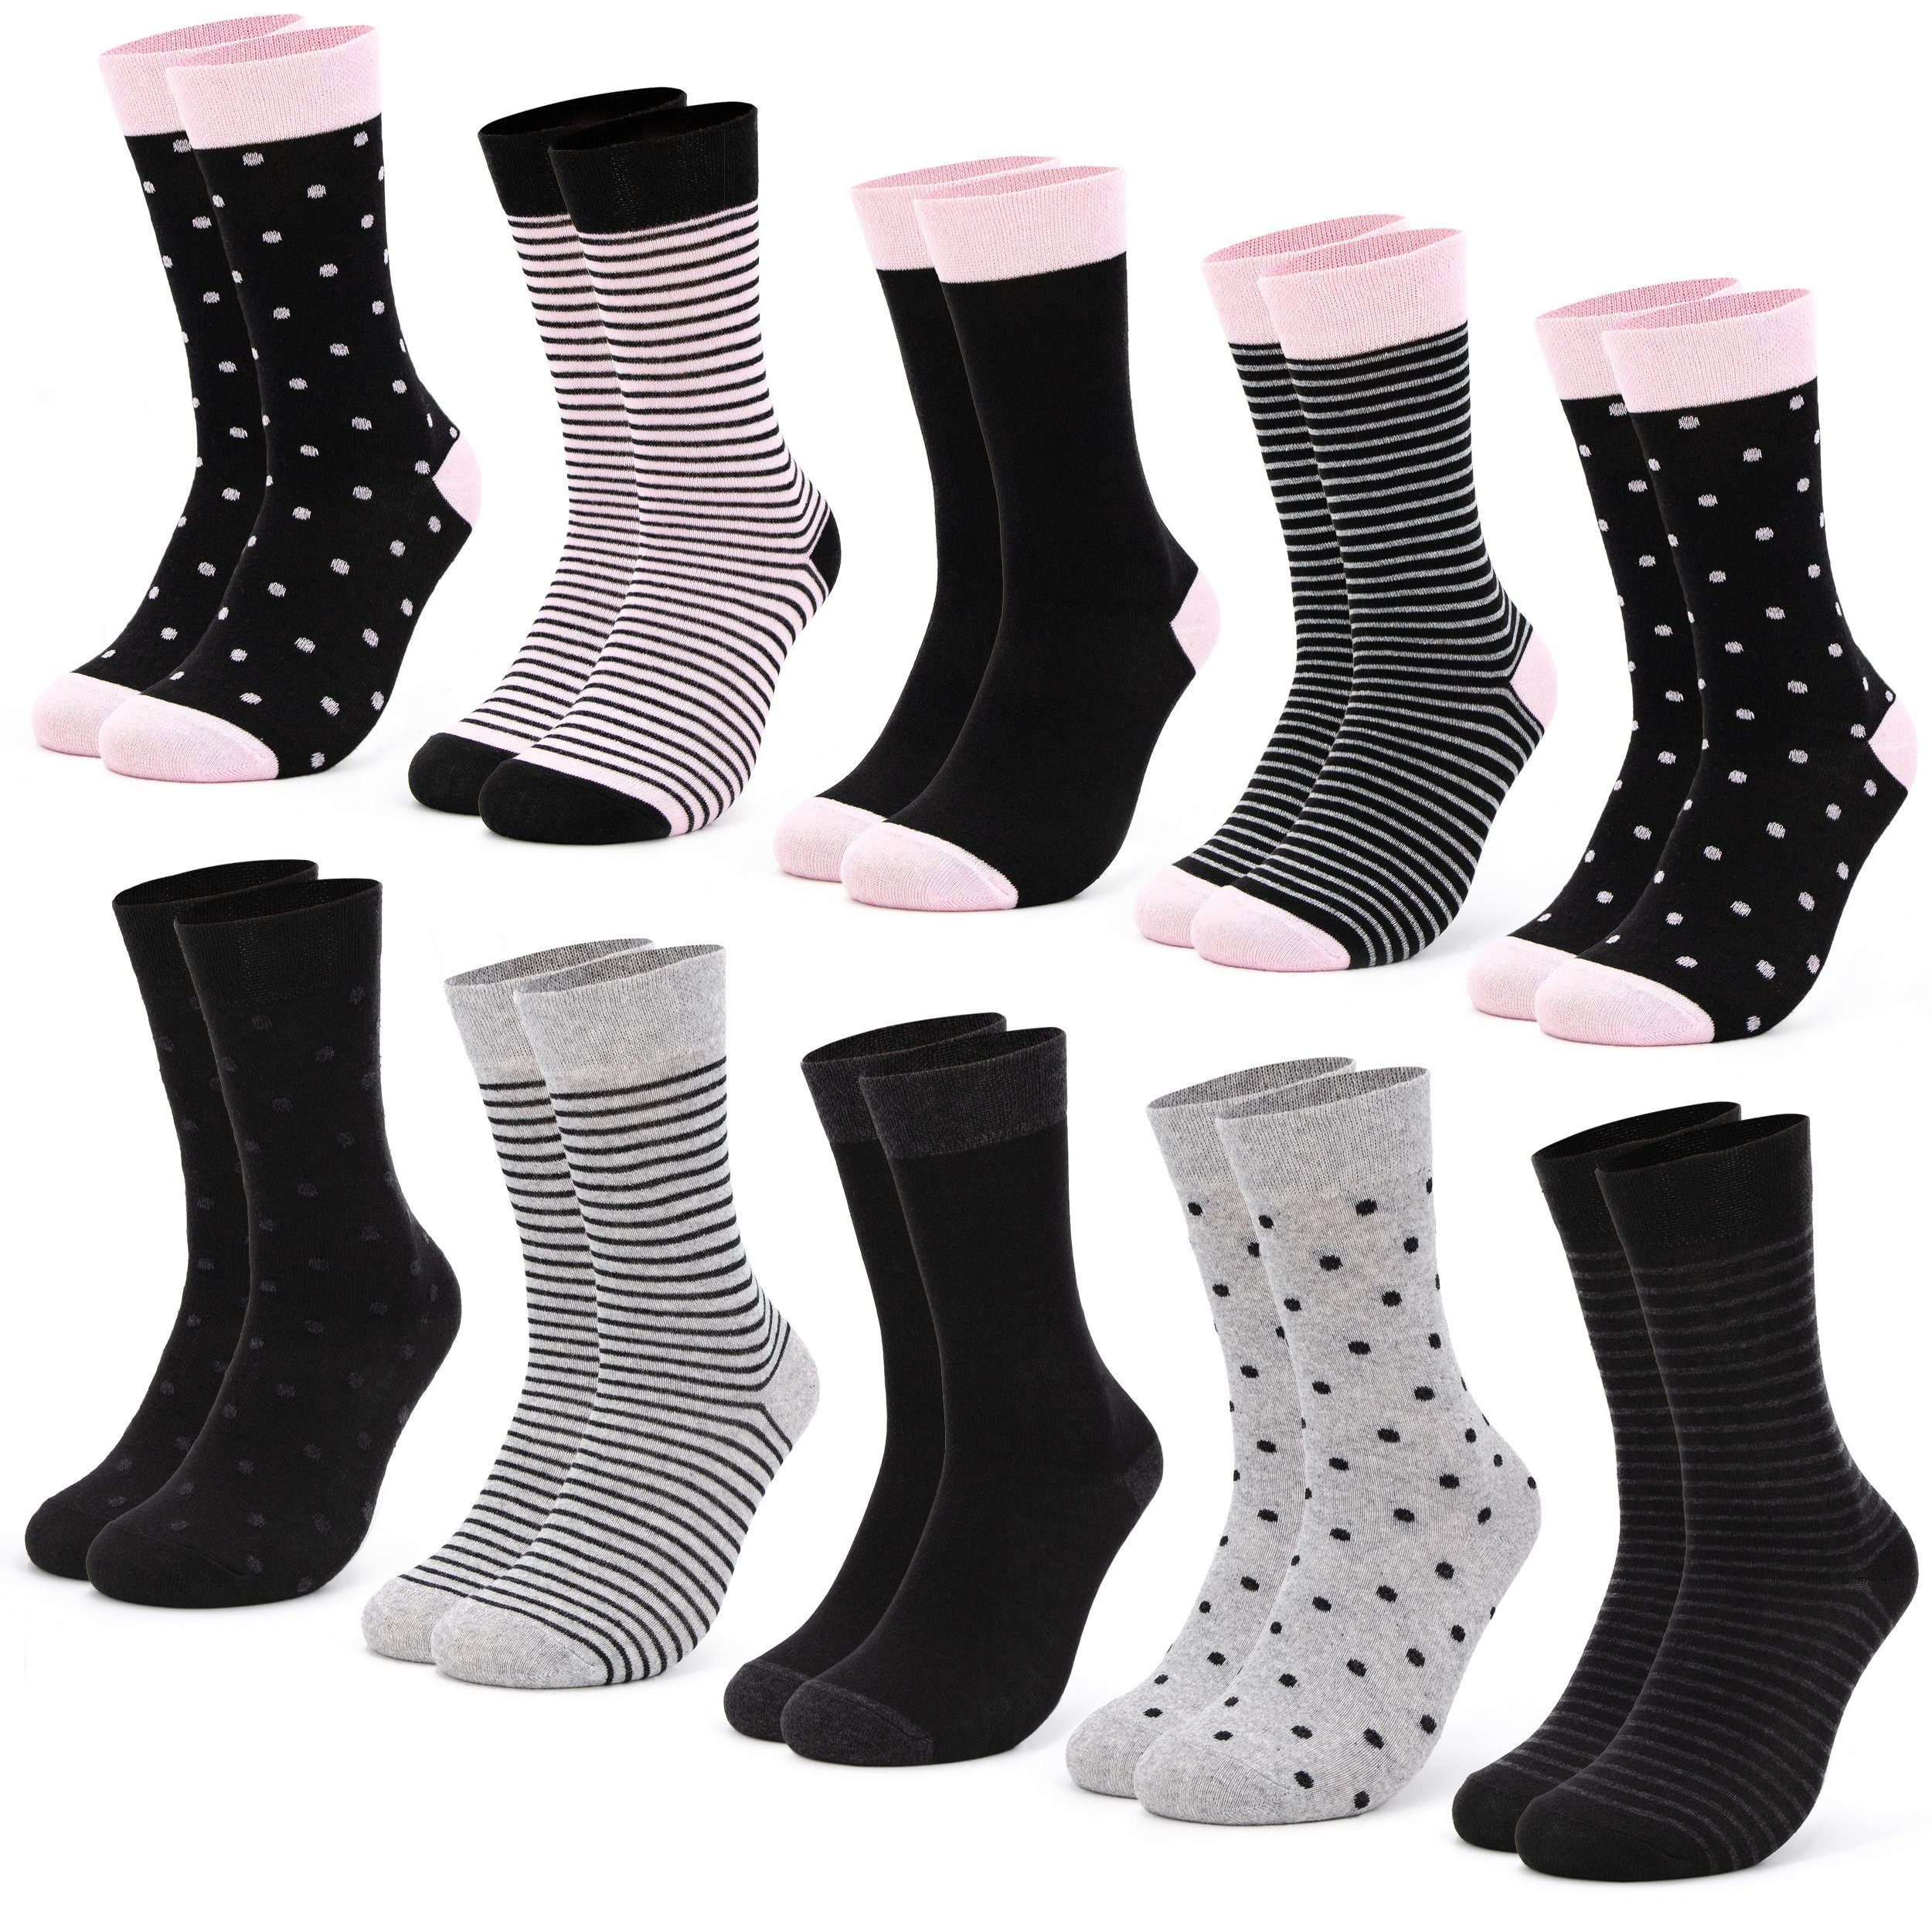 OCCULTO Basicsocken Damen Muster Socken 10 Paar (Modell: Milka) (10-Paar) 10BlkPnk